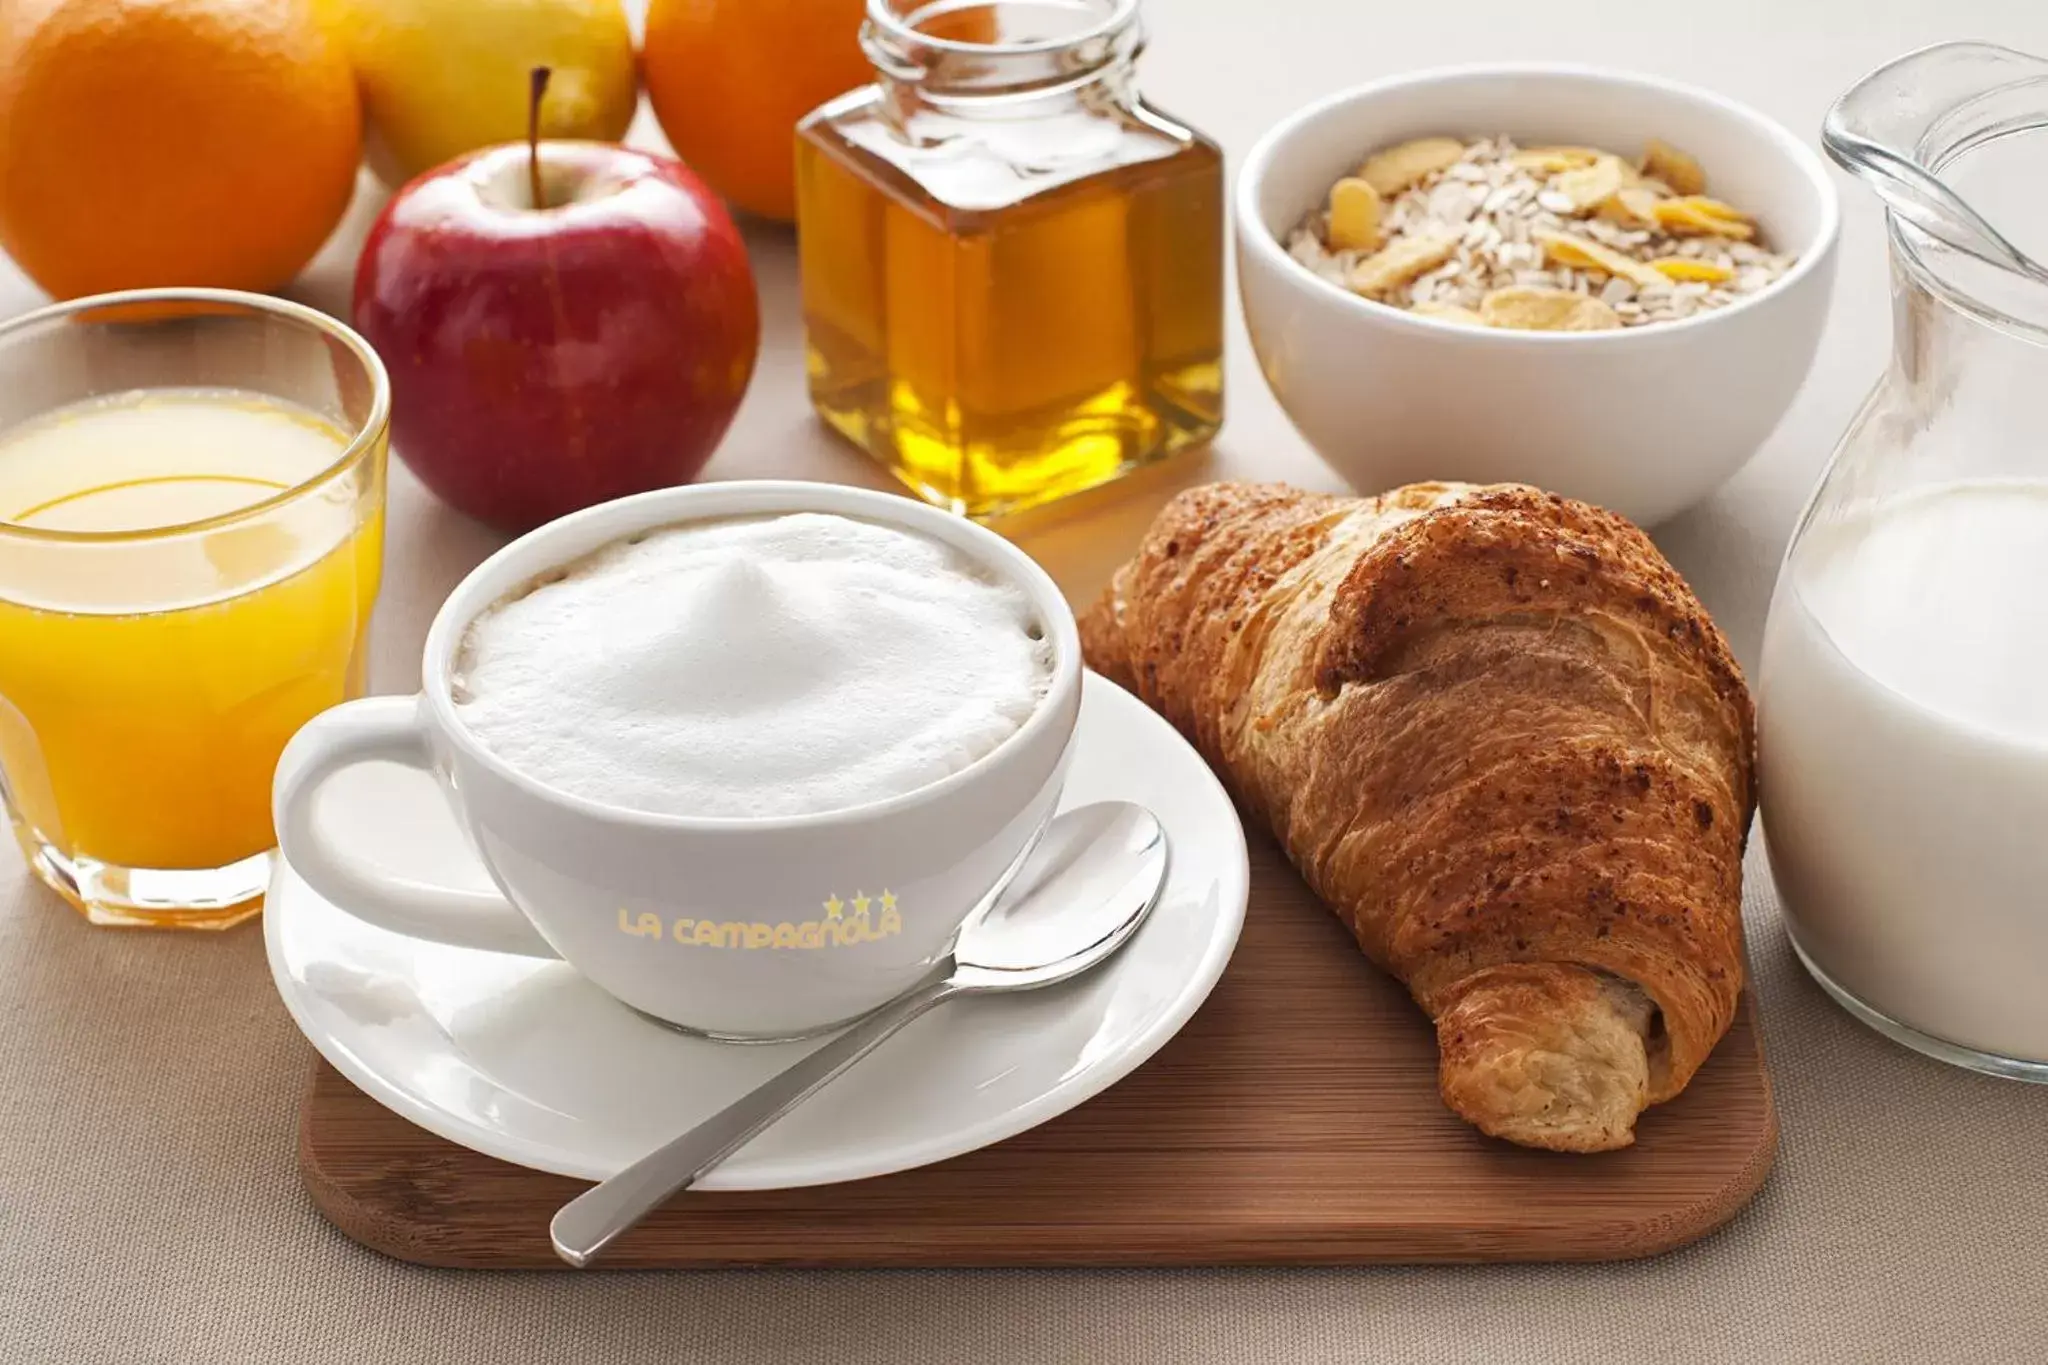 Continental breakfast in Hotel La Campagnola